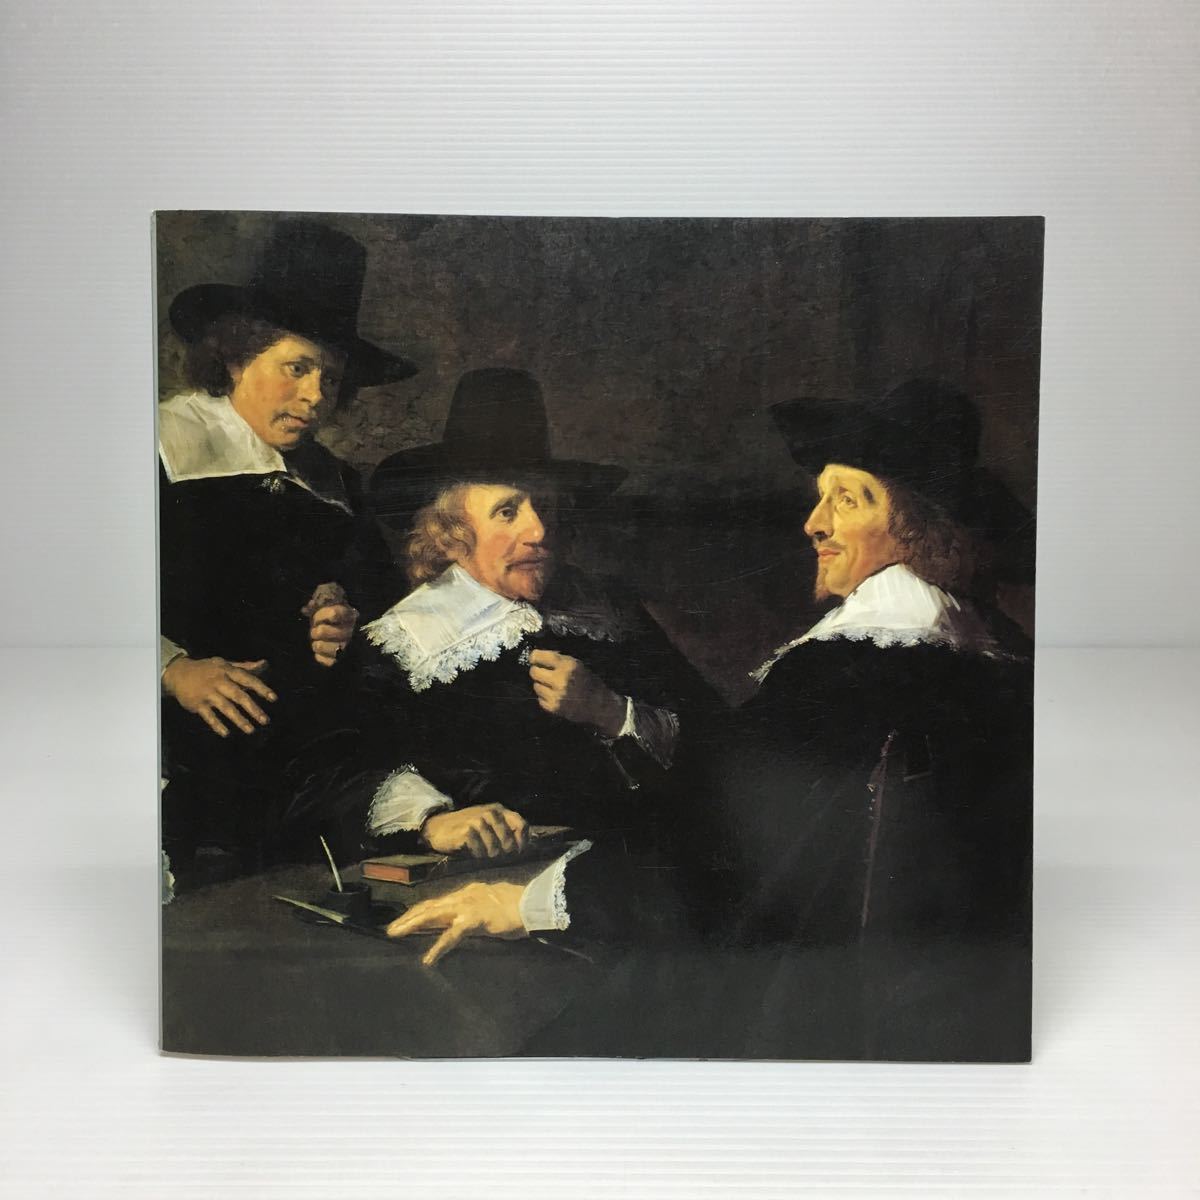 m2/Frans Hals und der Goldene Schnitt in der niederländischen Malerei des 17. Jahrhunderts FRANS HALS & HAARLEM PAINTERS 1988, Malerei, Kunstbuch, Sammlung, Katalog